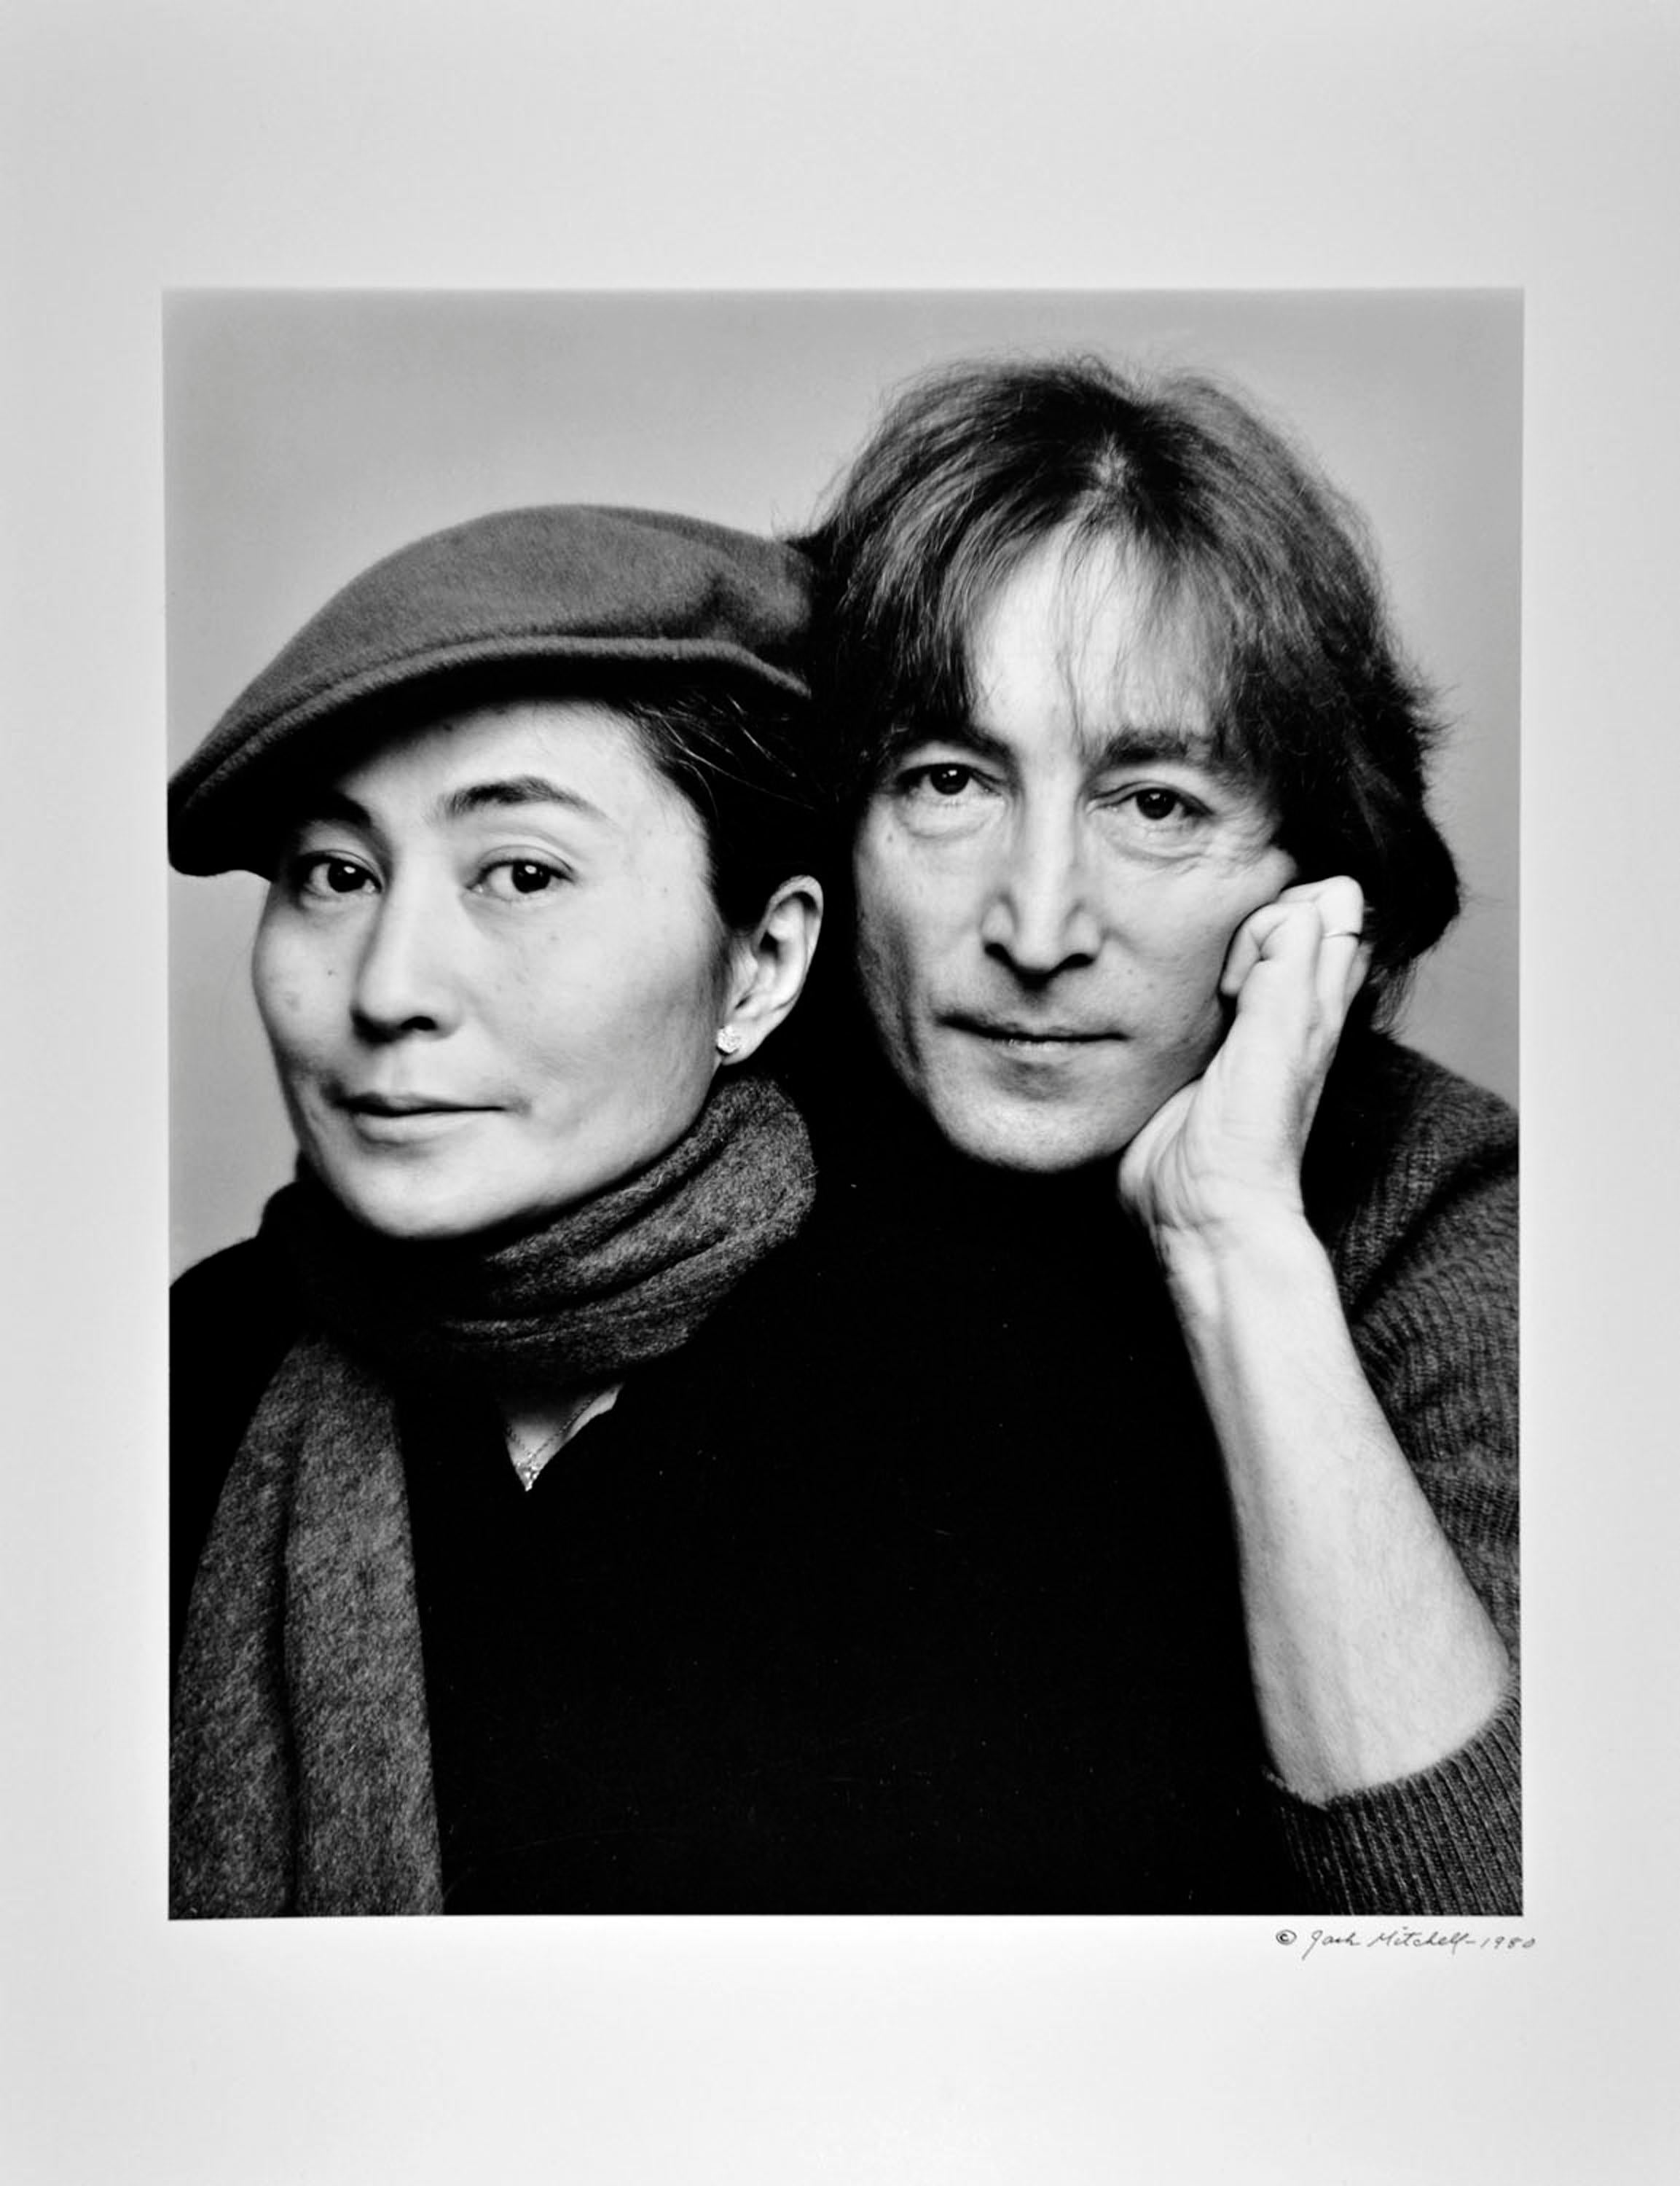 11 x 14" alte Silbergelatinefotografie von John Lennon und Yoko Ono, aufgenommen am 2. November 1980, der letzten umfassenden Fotosession in Lennons Leben. Signiert von Jack Mitchell auf der Vorderseite des Drucks.   Kommt direkt aus dem Jack